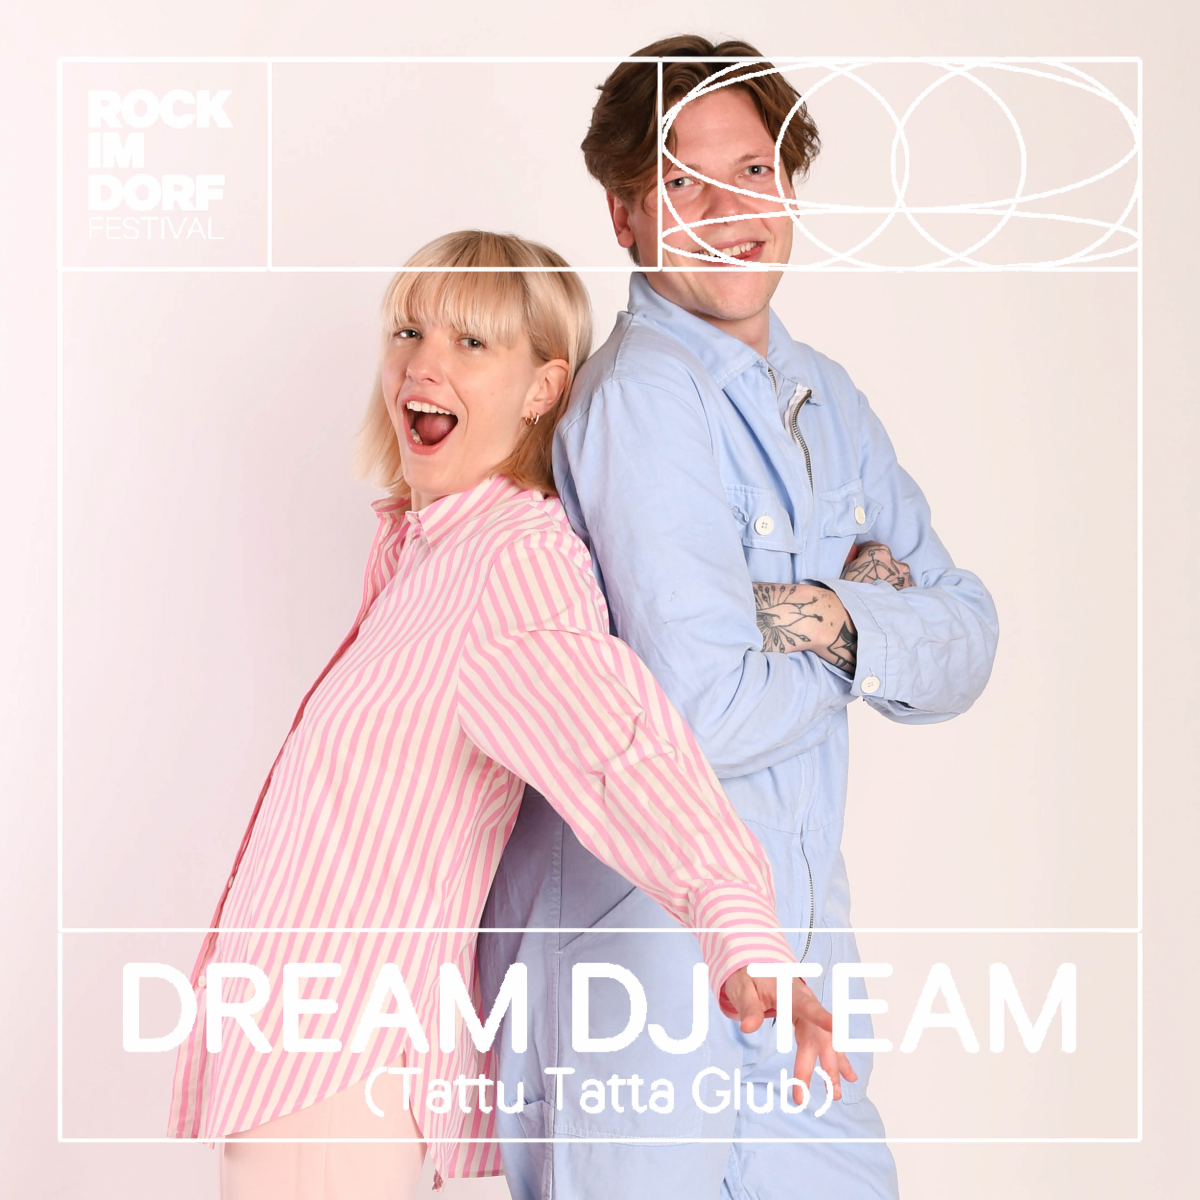 Dream DJ Team (Tattu Tatta Glub)